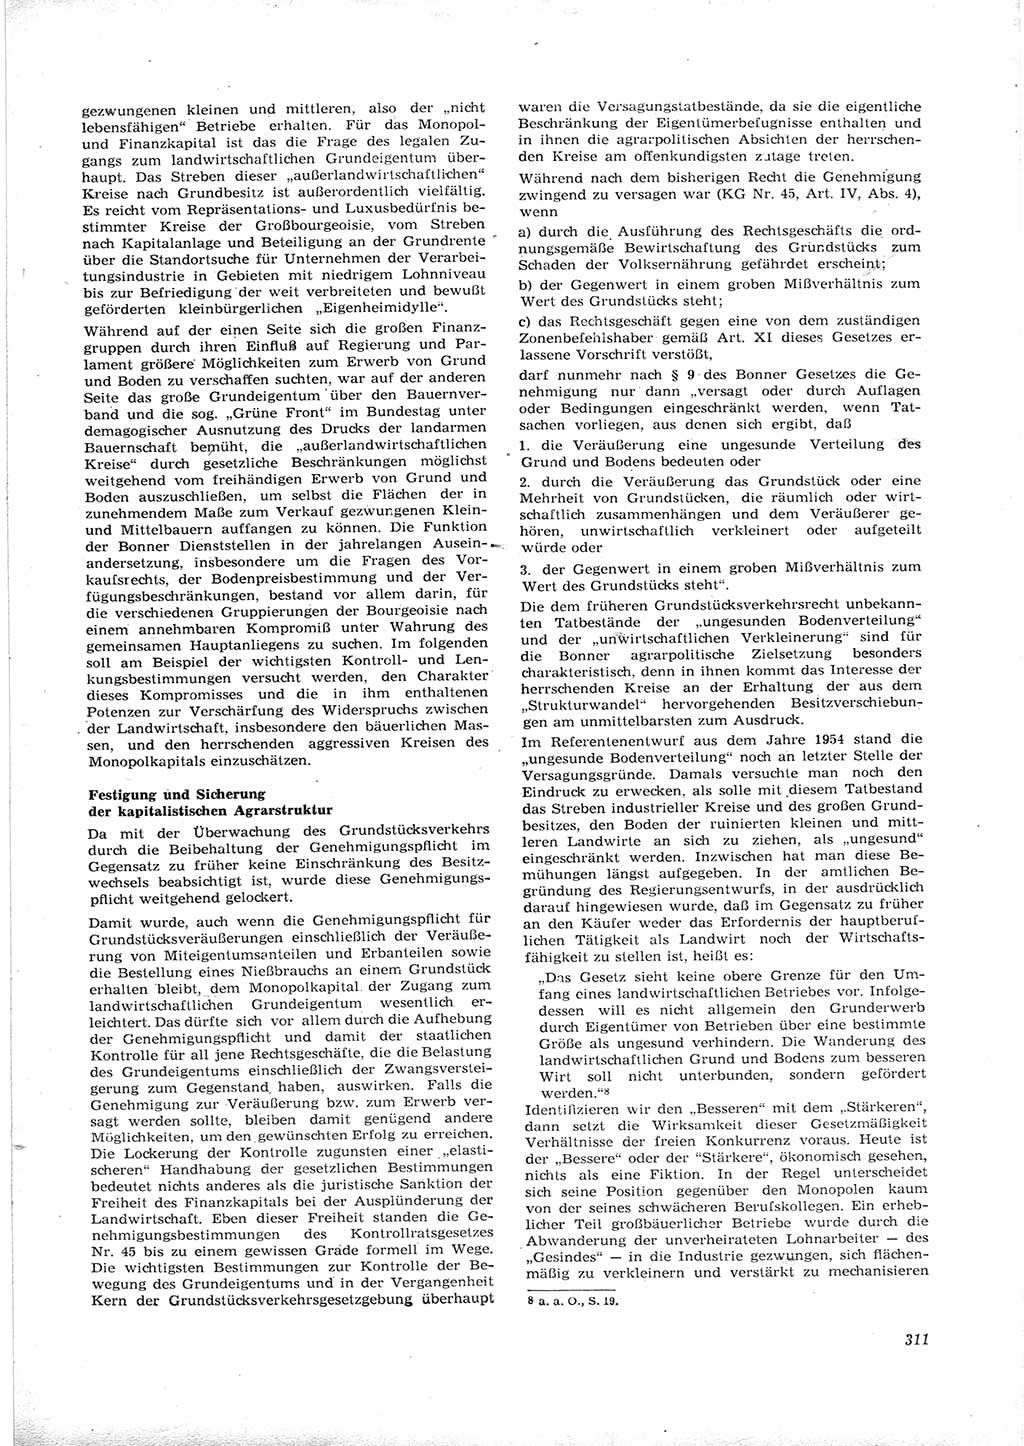 Neue Justiz (NJ), Zeitschrift für Recht und Rechtswissenschaft [Deutsche Demokratische Republik (DDR)], 16. Jahrgang 1962, Seite 311 (NJ DDR 1962, S. 311)